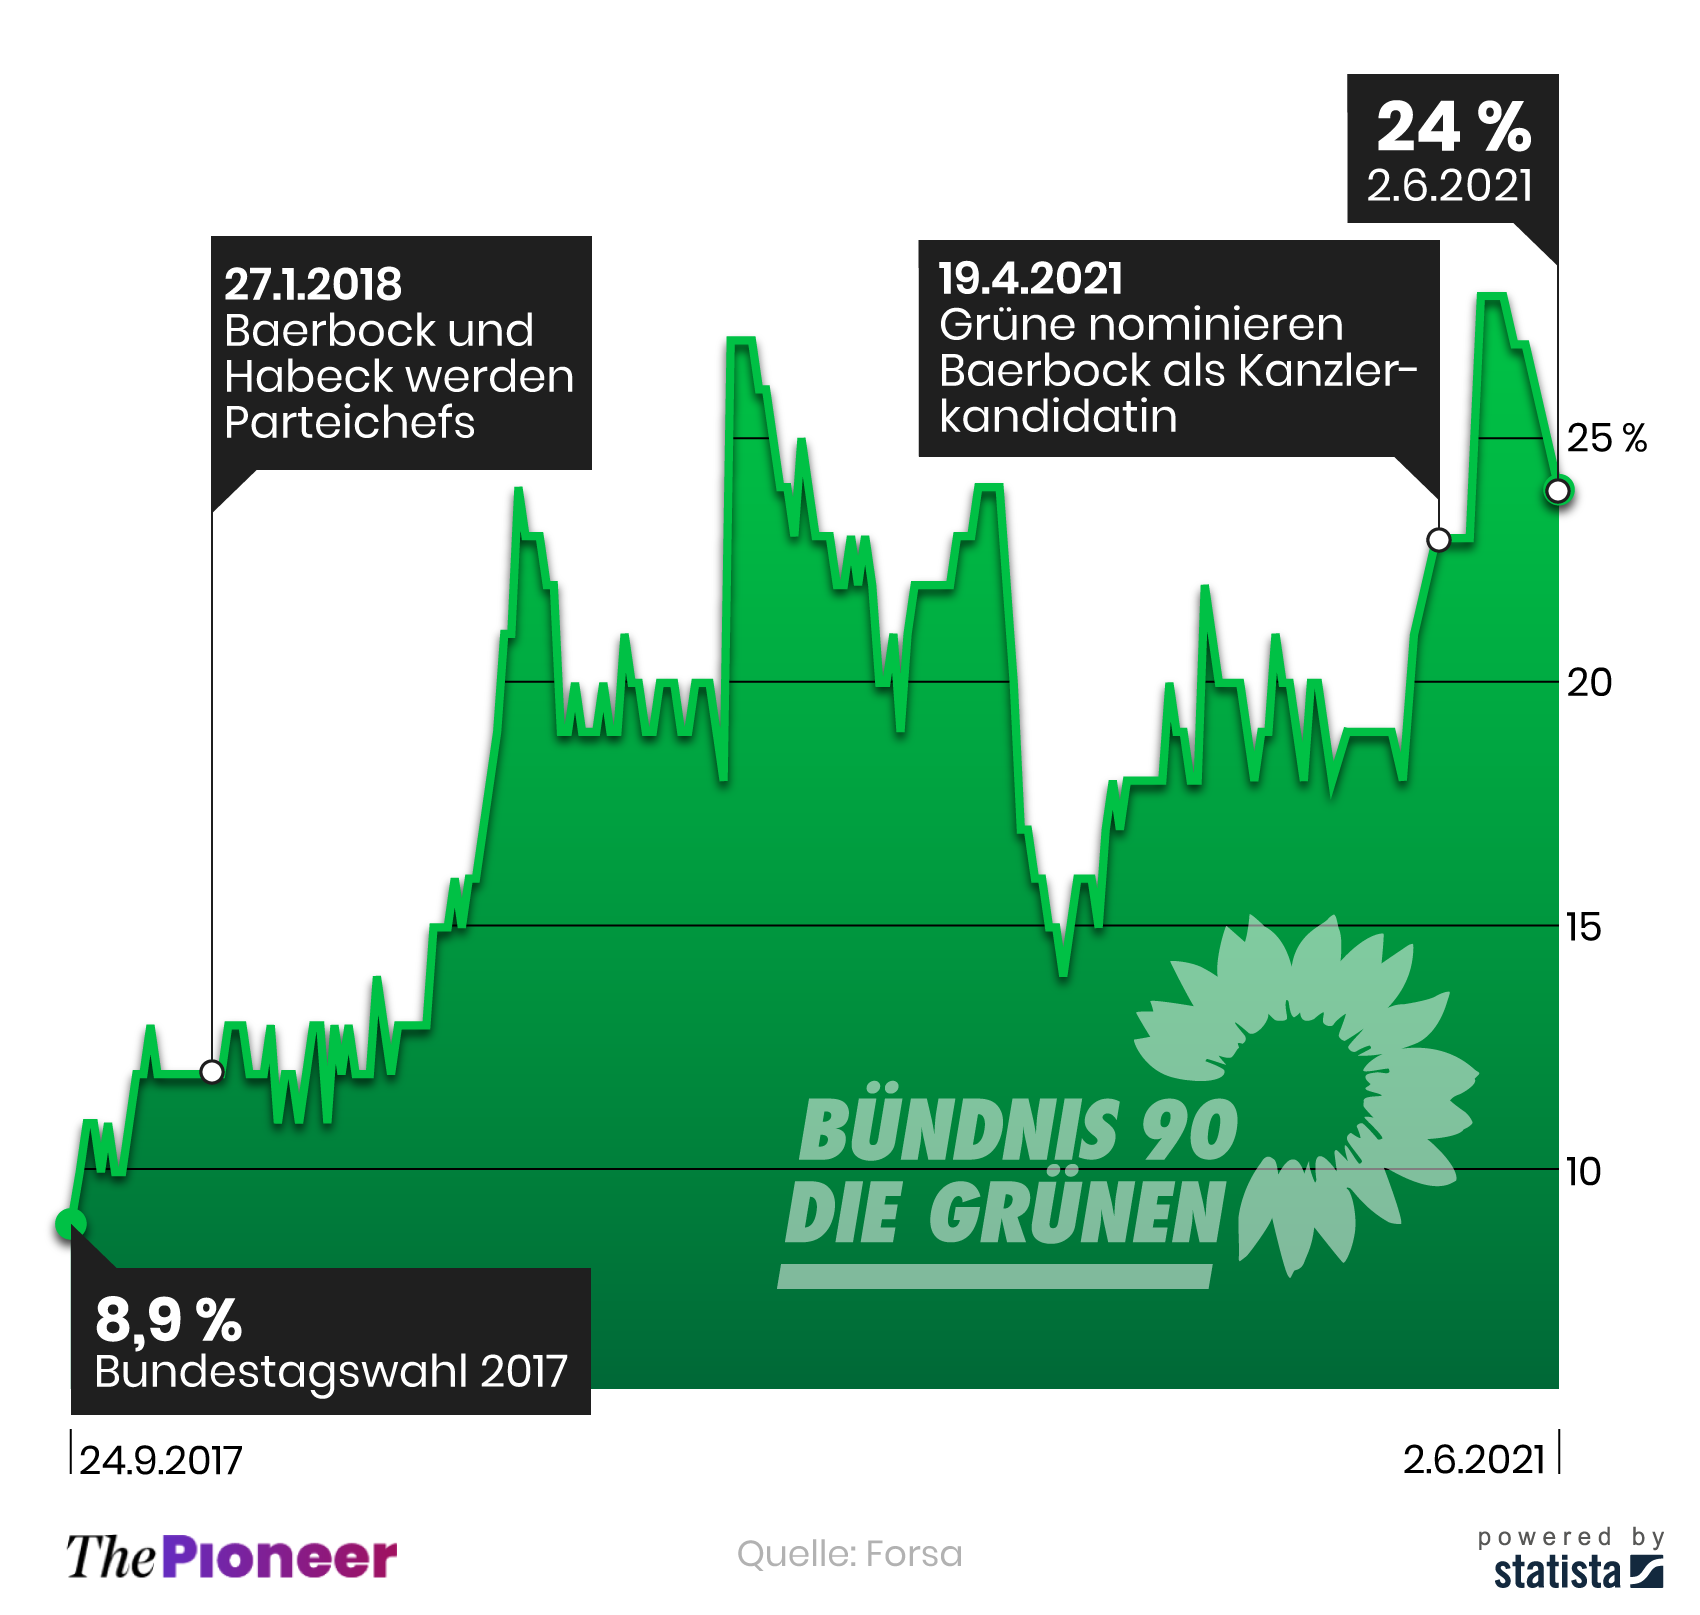 Bundestagswahlergebnisse 2017 und Umfragewerte der Grünen bis zum 2.6.2021, in Prozent